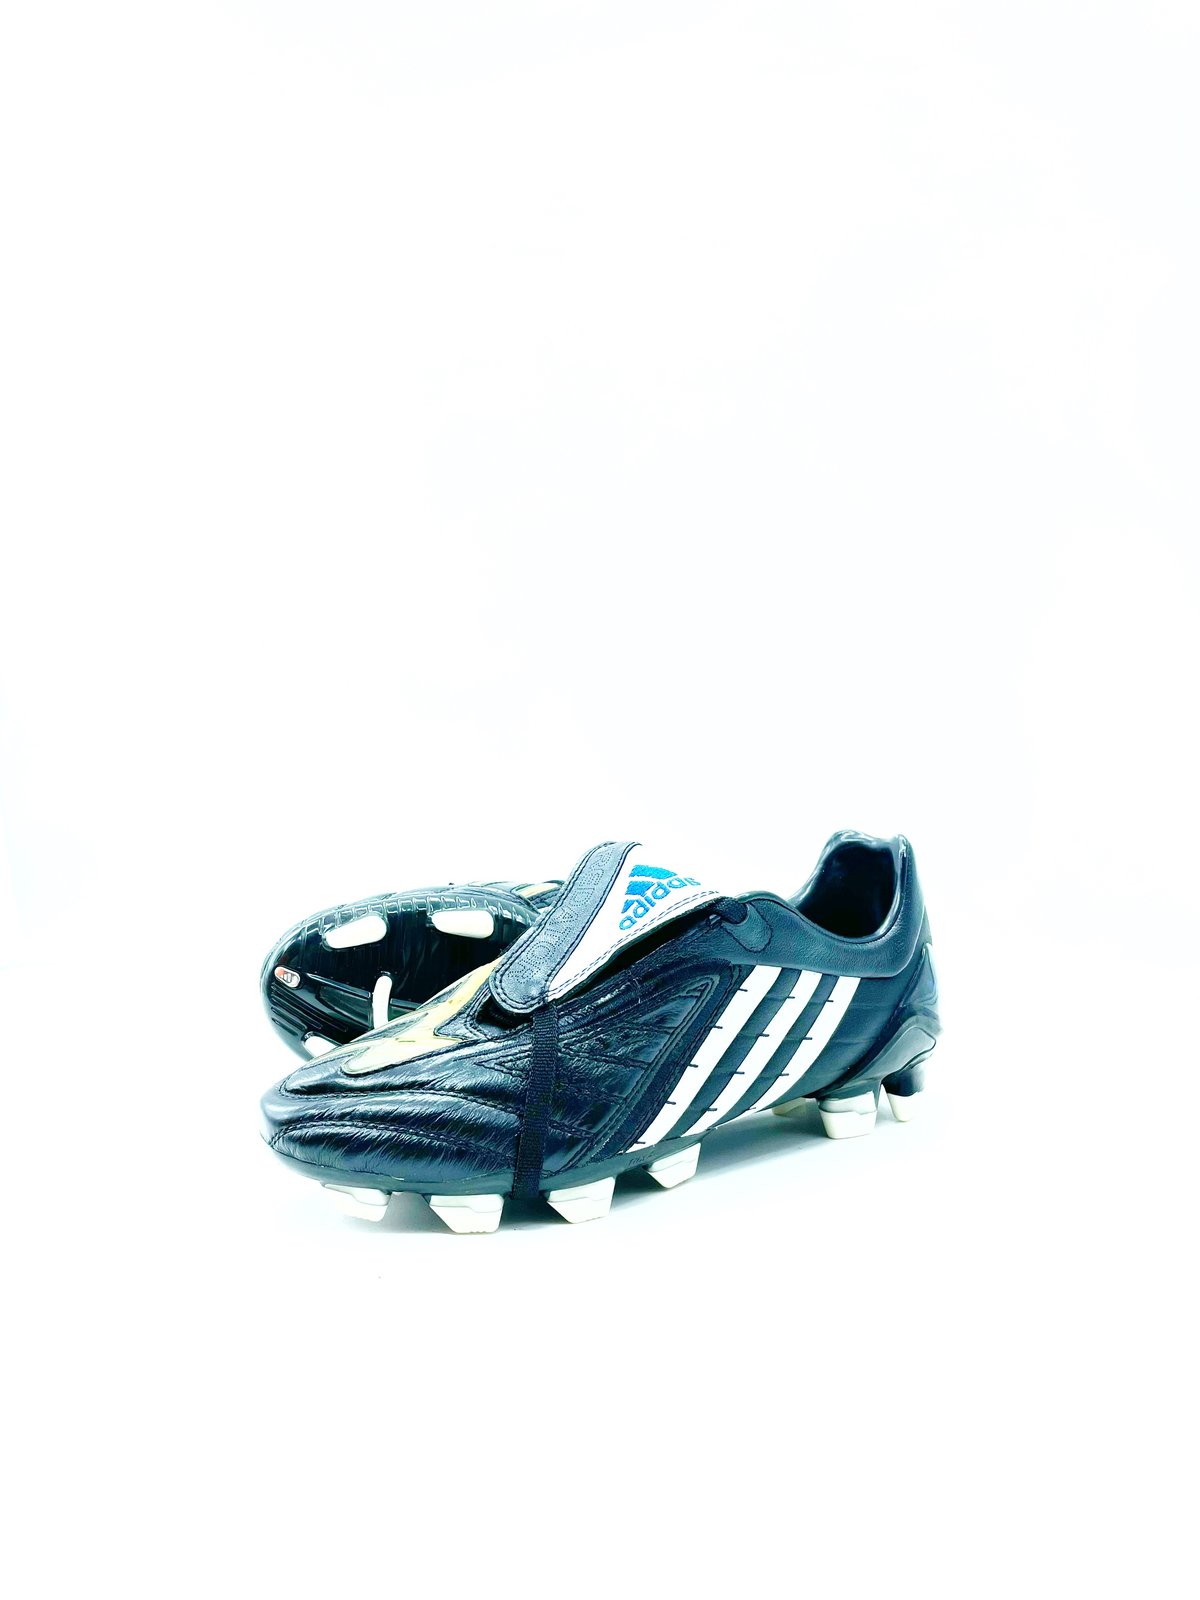 Tbtclassicfootballboots — Adidas Predator Powerswerve Fg black